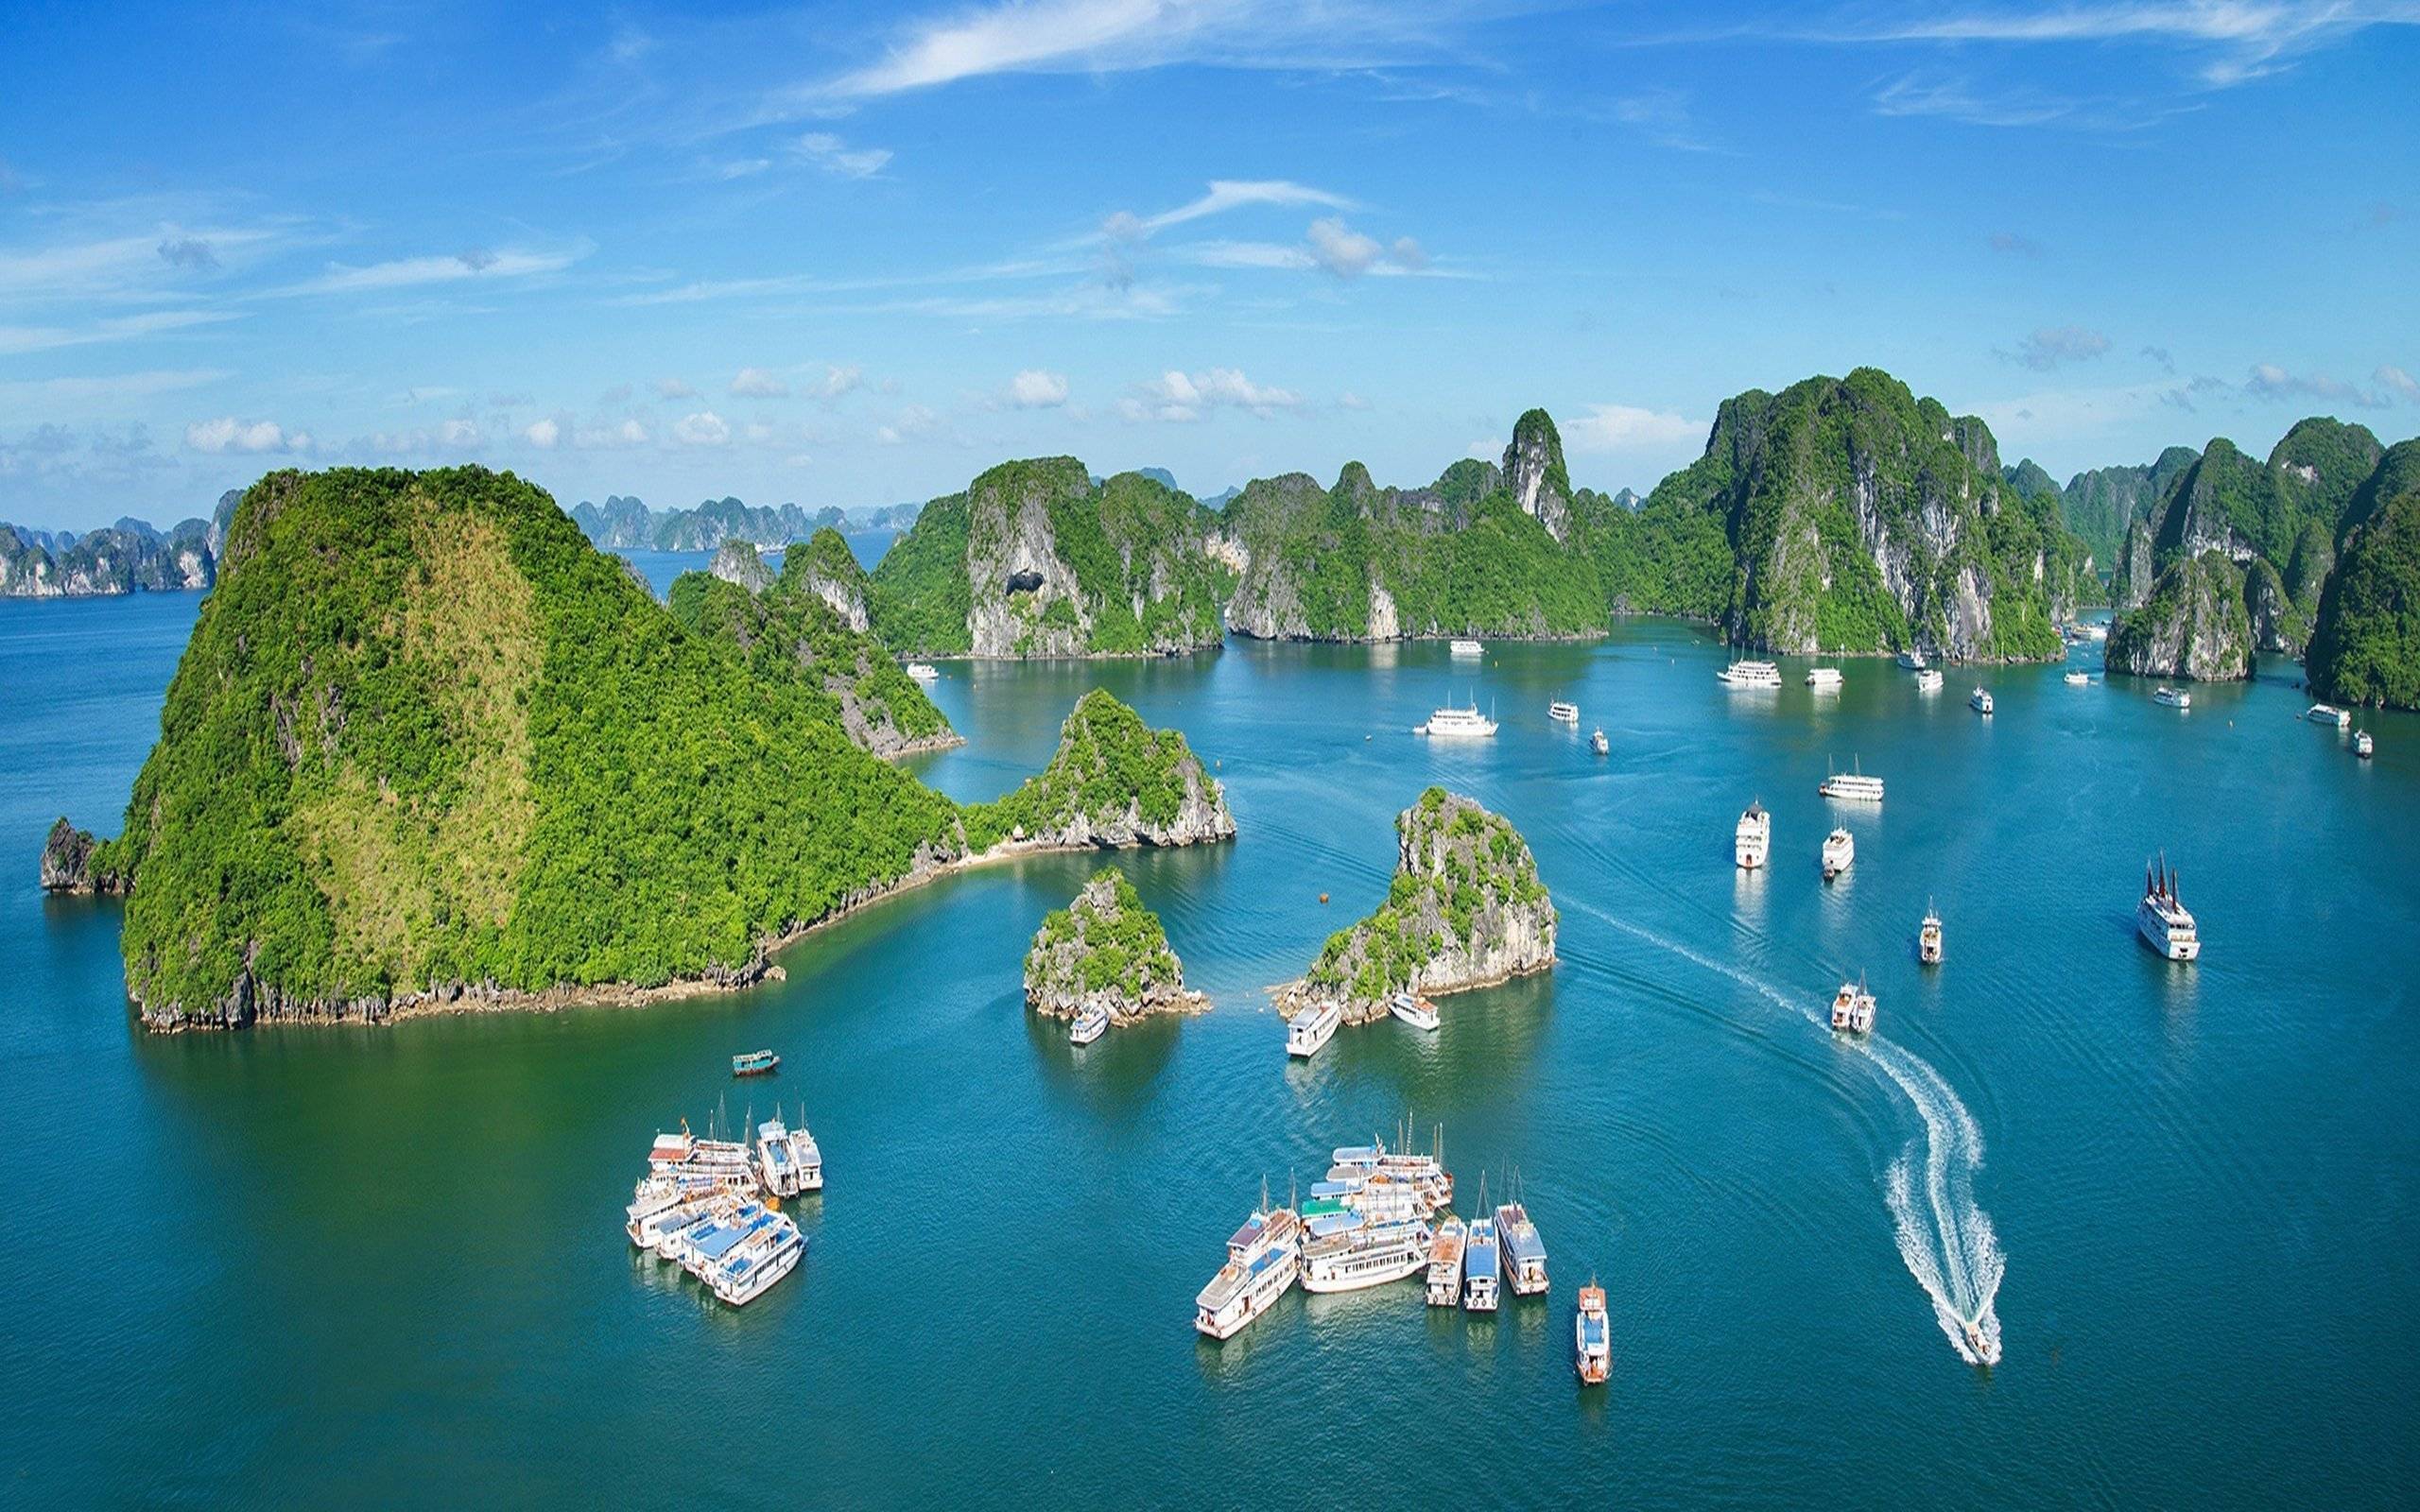 Халонг - вьетнам, фото, видео бухты халонг, отзывы об экскурсиях, как добраться - 2022